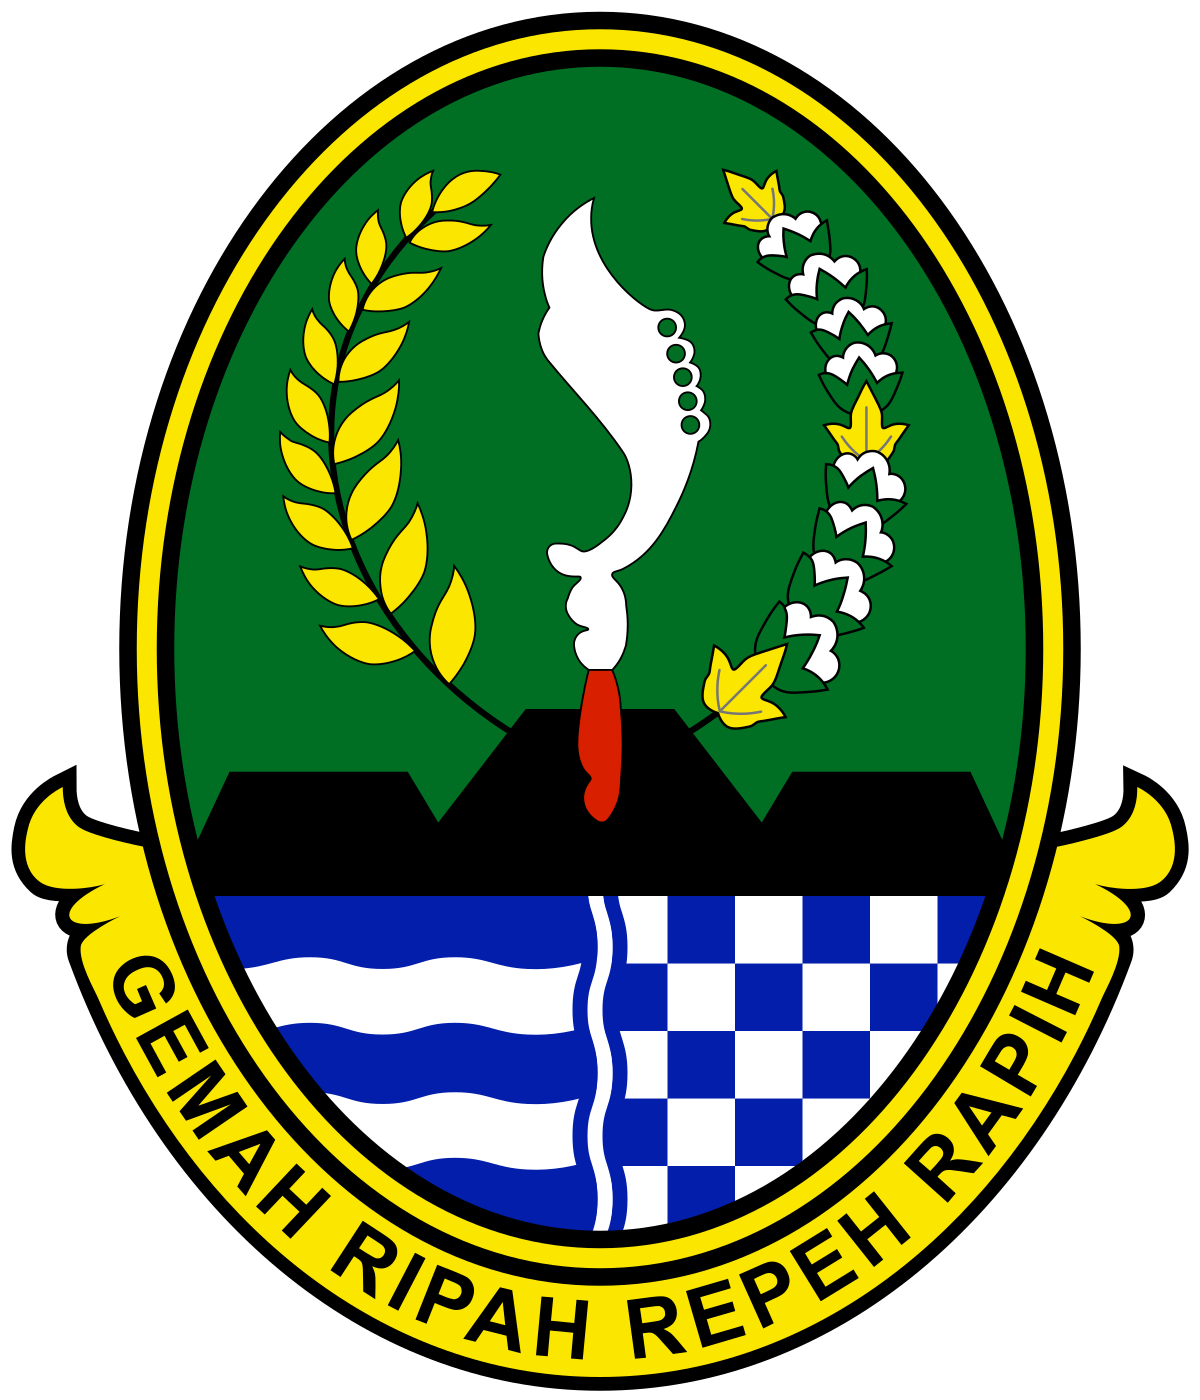 Dewan Perwakilan Rakyat Daerah Provinsi Jawa Barat